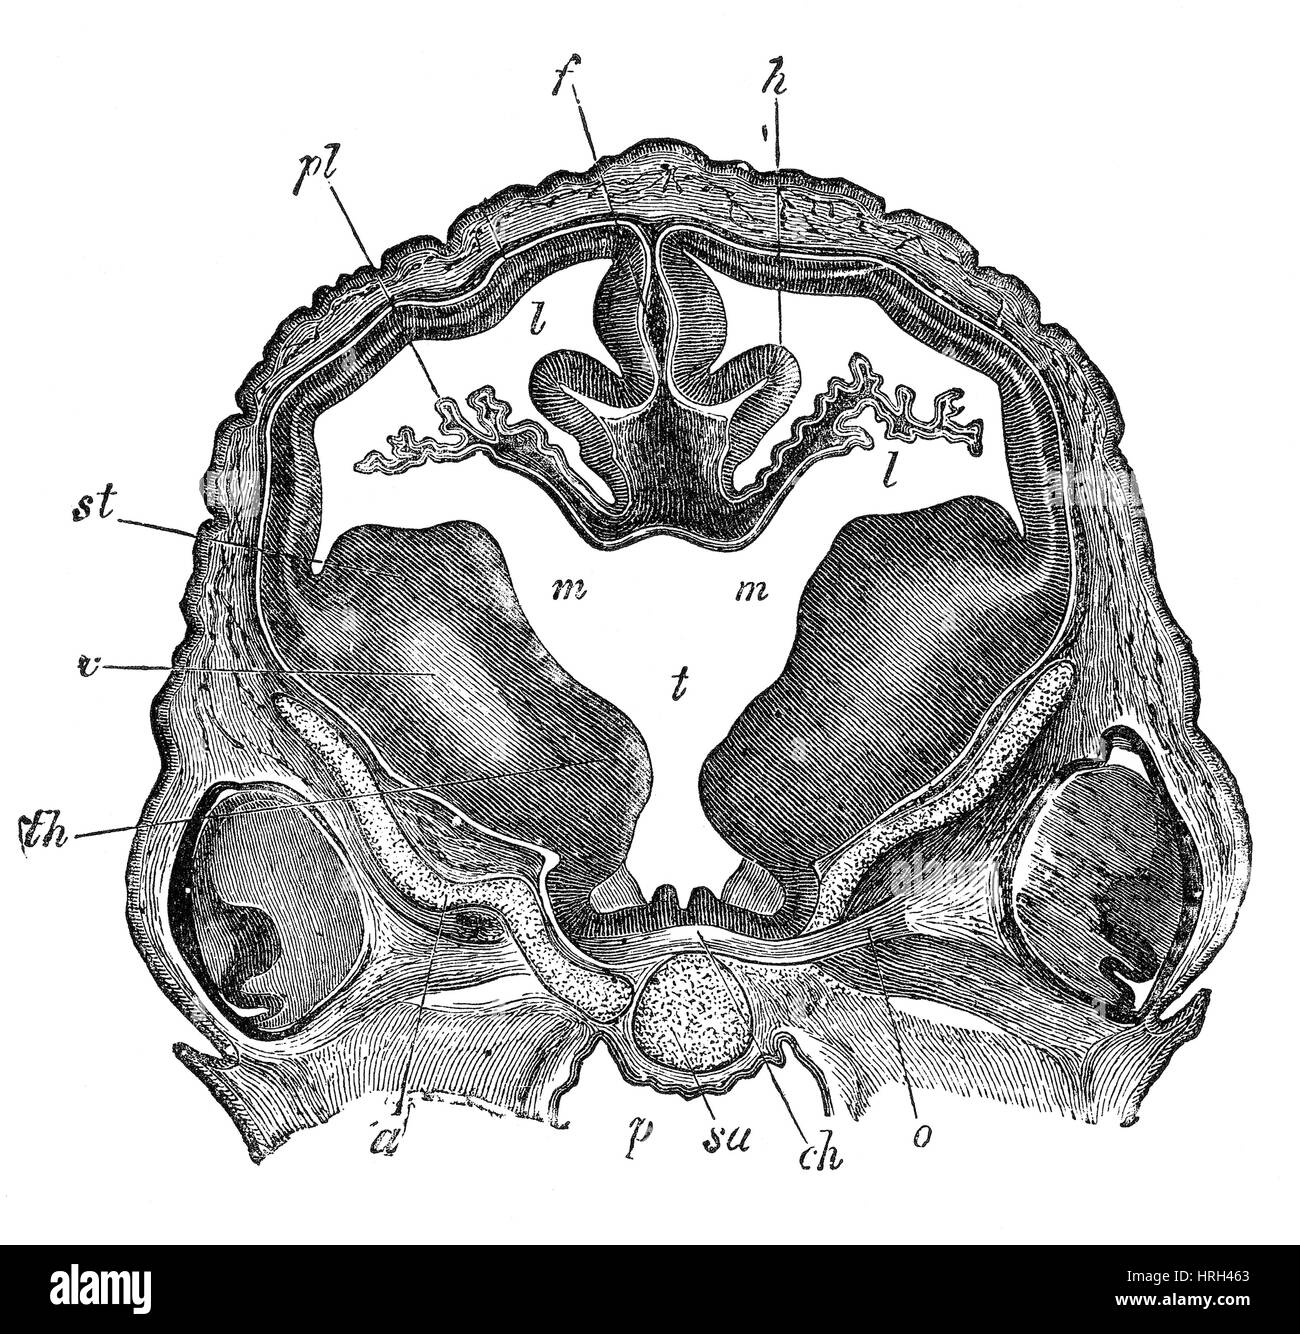 Gehirn des Embryos Schafe, Querschnitt Stockfoto